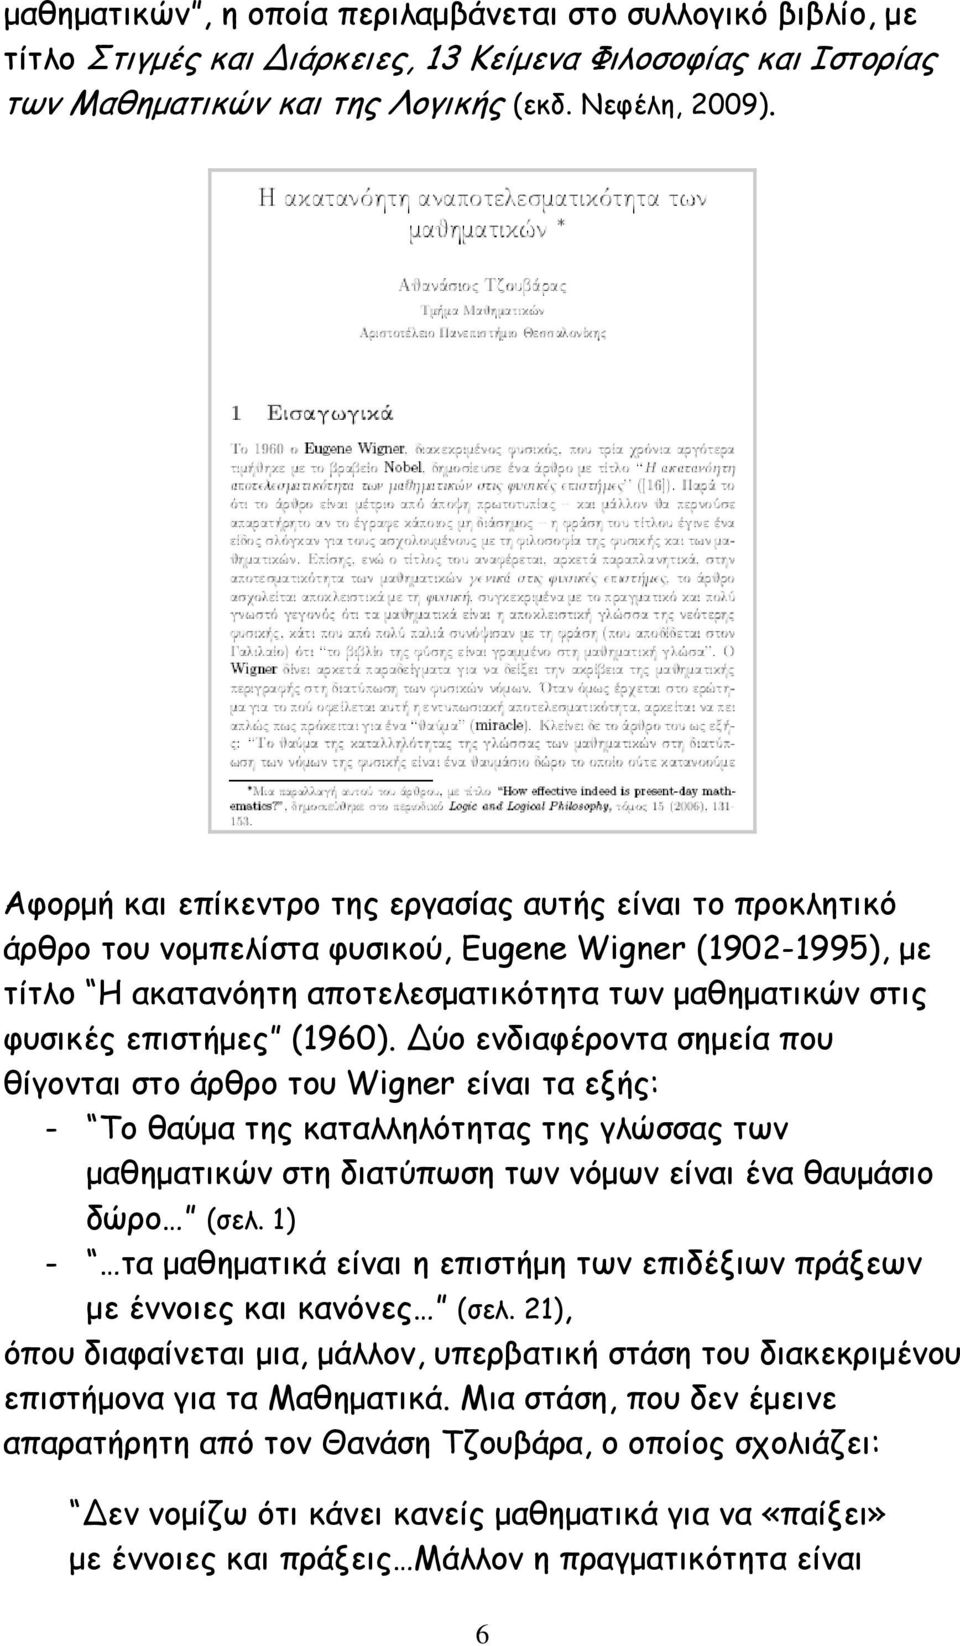 (1960). ύο ενδιαφέροντα σημεία που θίγονται στο άρθρο του Wigner είναι τα εξής: - Το θαύμα της καταλληλότητας της γλώσσας των μαθηματικών στη διατύπωση των νόμων είναι ένα θαυμάσιο δώρο (σελ.